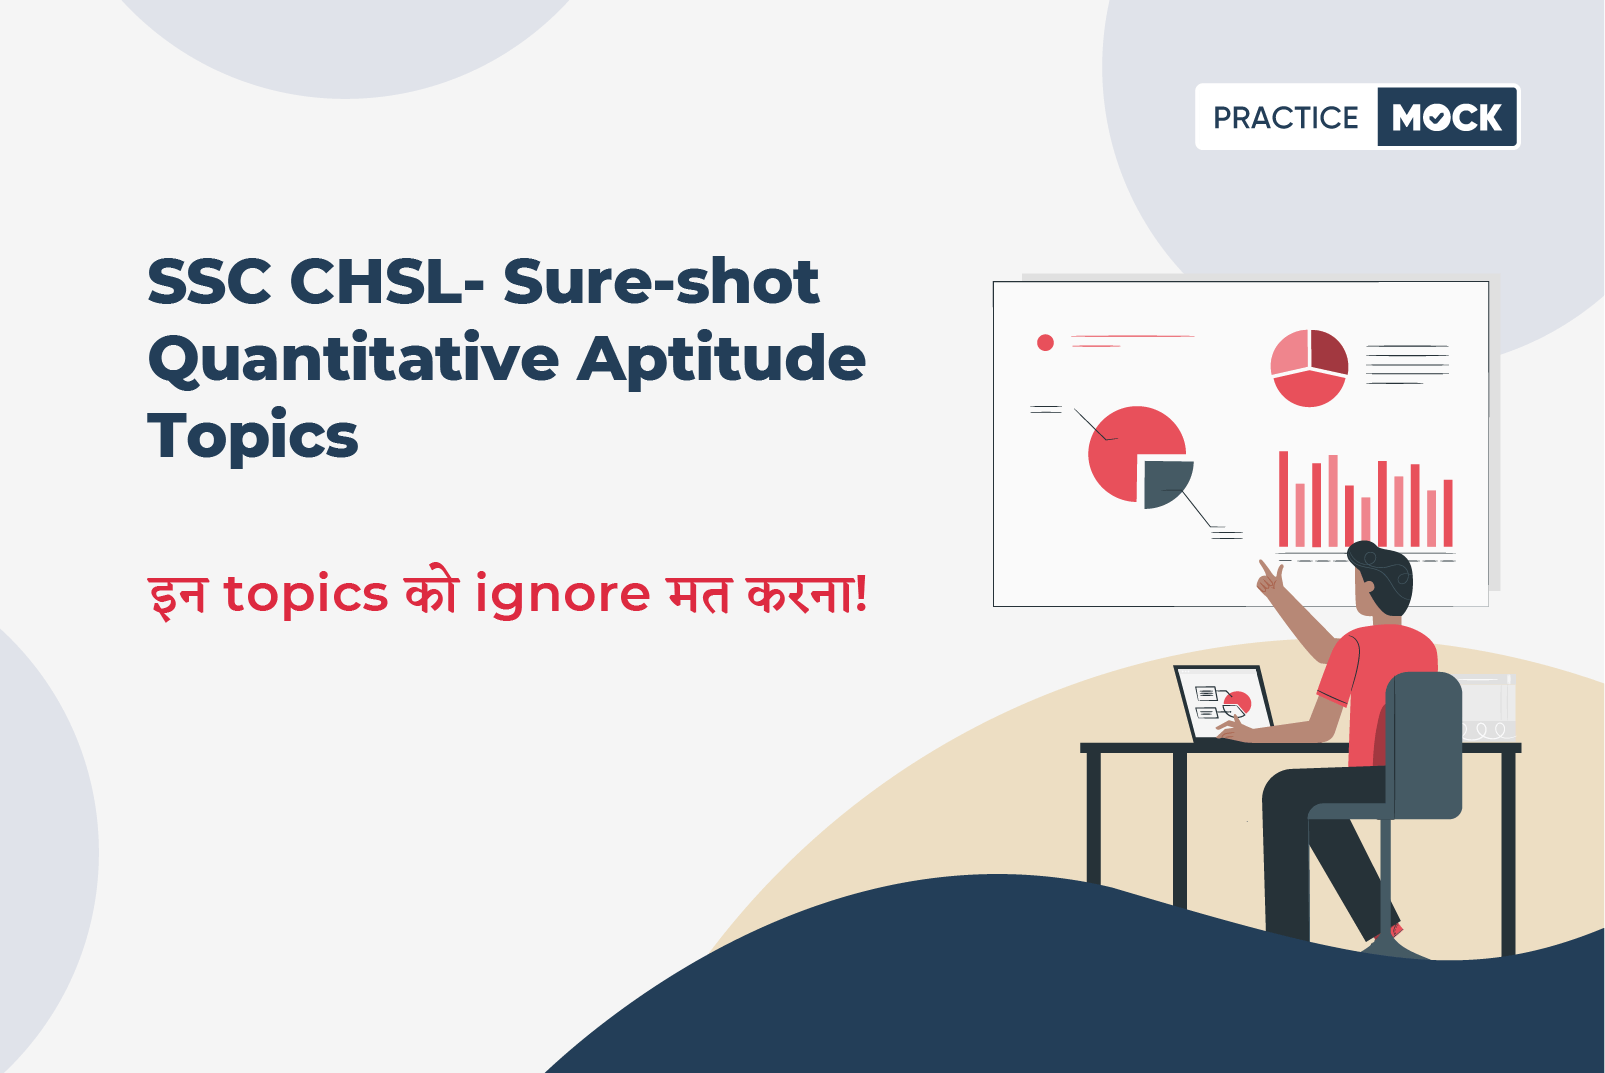 SSC CHSL- Sure-shot Quantitative Aptitude Topics